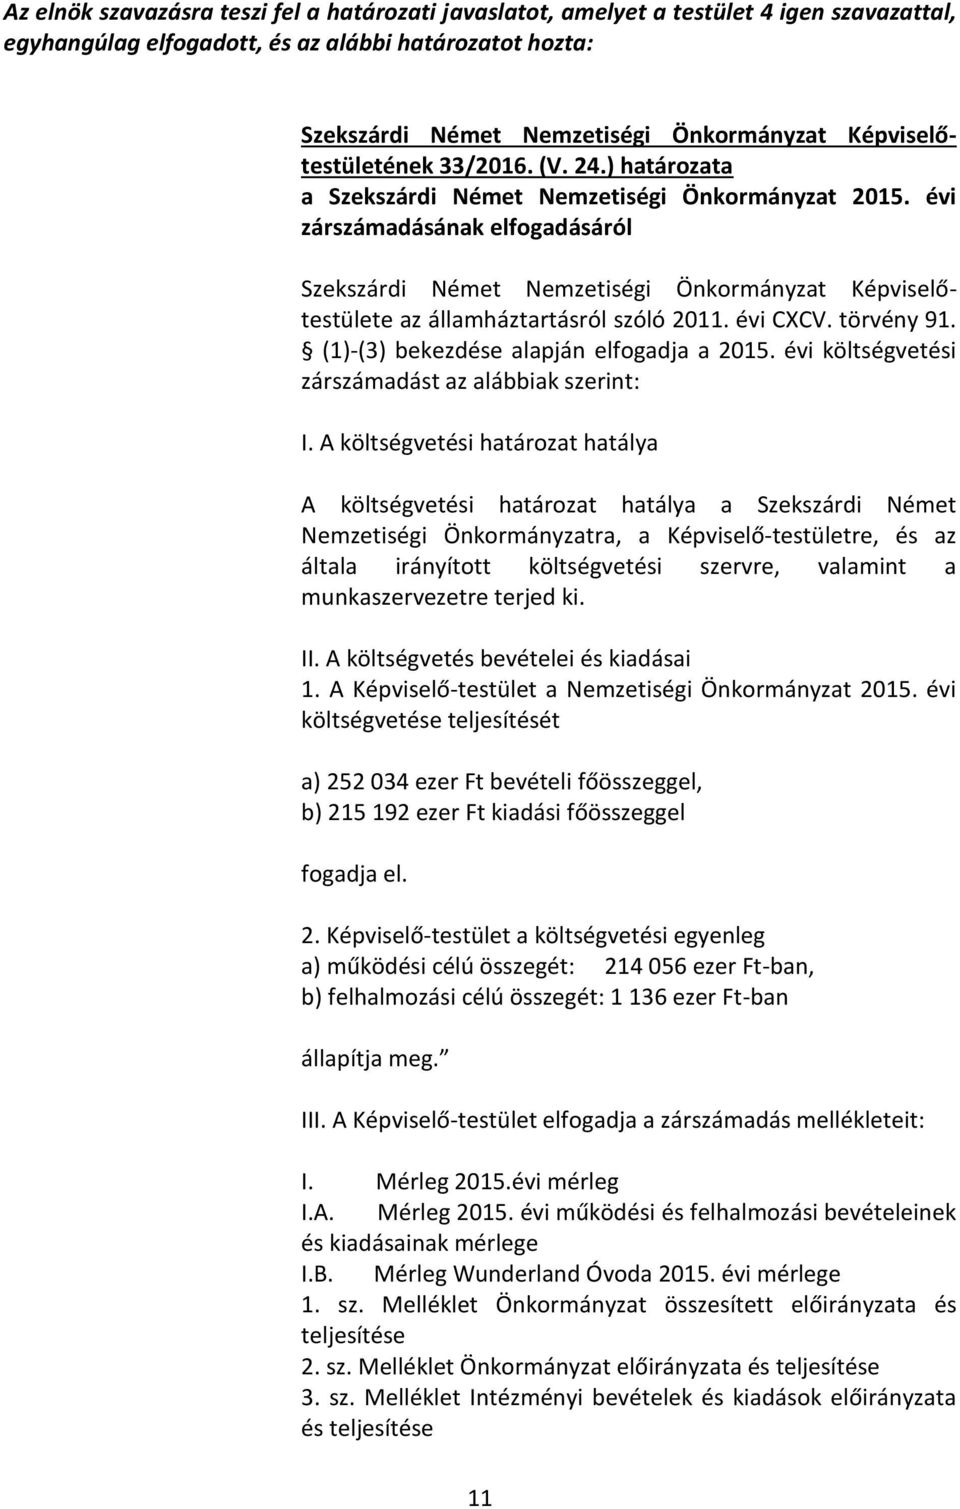 évi zárszámadásának elfogadásáról Szekszárdi Német Nemzetiségi Önkormányzat Képviselőtestülete az államháztartásról szóló 2011. évi CXCV. törvény 91. (1)-(3) bekezdése alapján elfogadja a 2015.